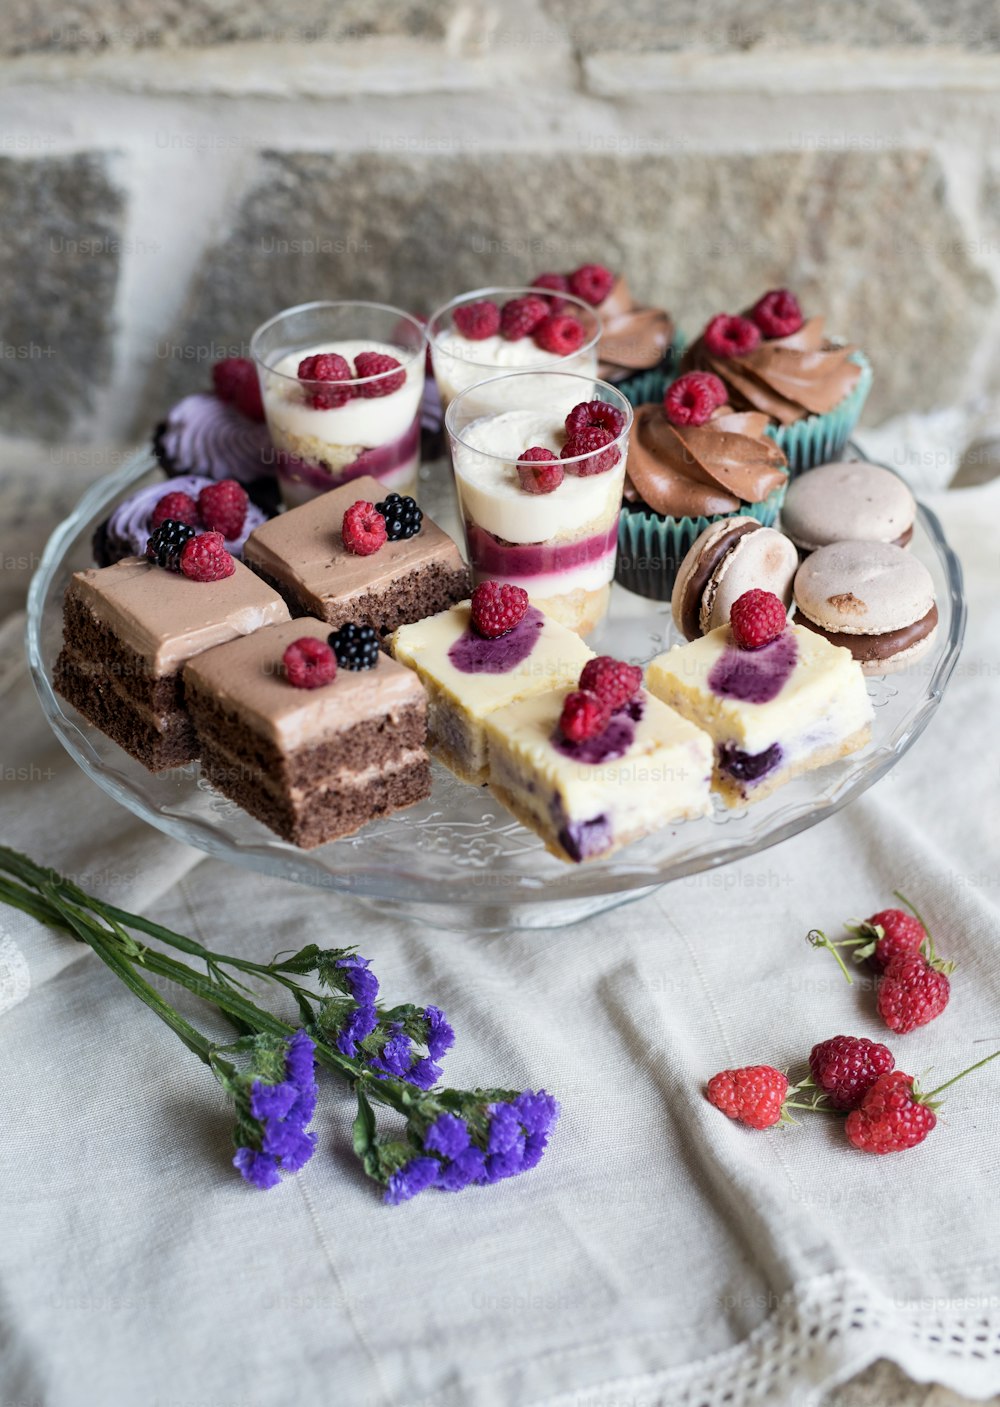 Une vue de dessus d’une sélection de desserts colorés et délicieux sur un plateau sur la table.